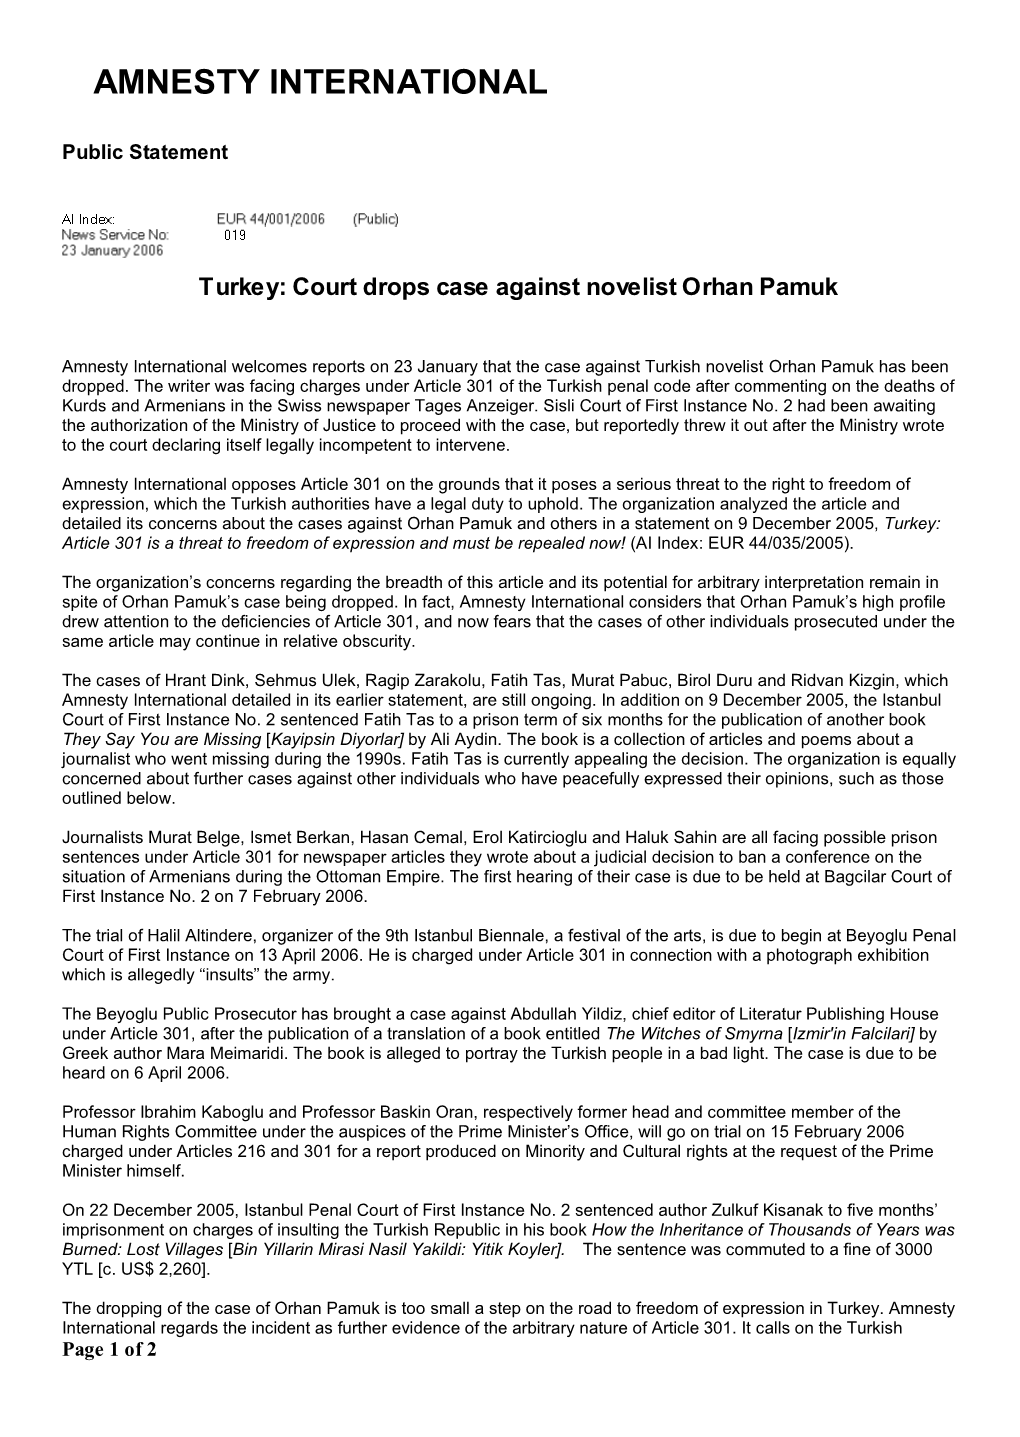 Turkey: Court Drops Case Against Novelist Orhan Pamuk